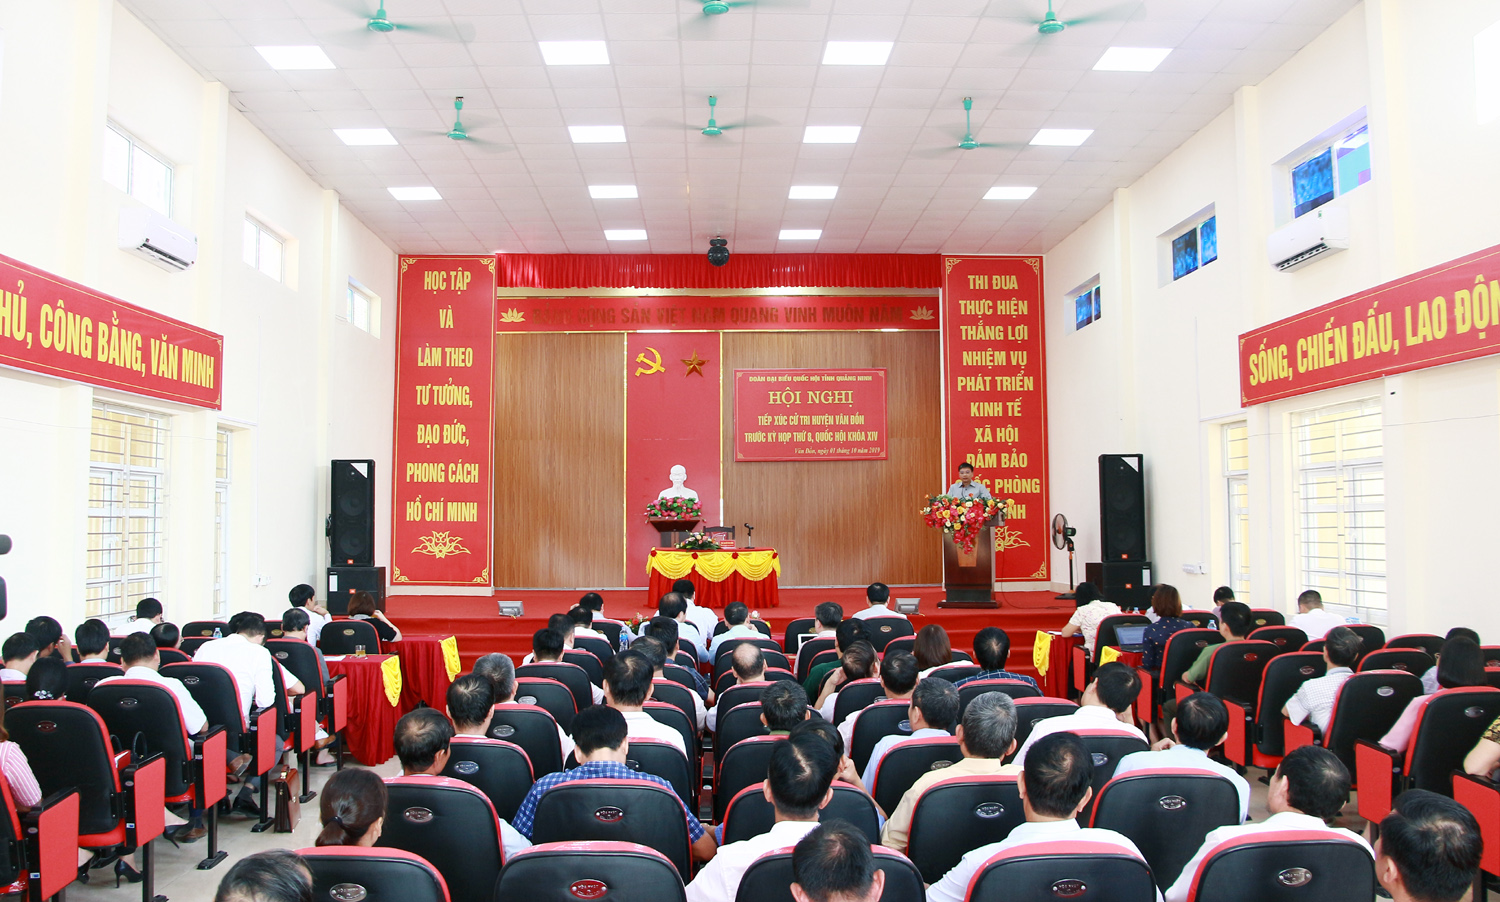 Quang cảnh hội nghị tiếp xúc cử tri huyện Vân Đồn